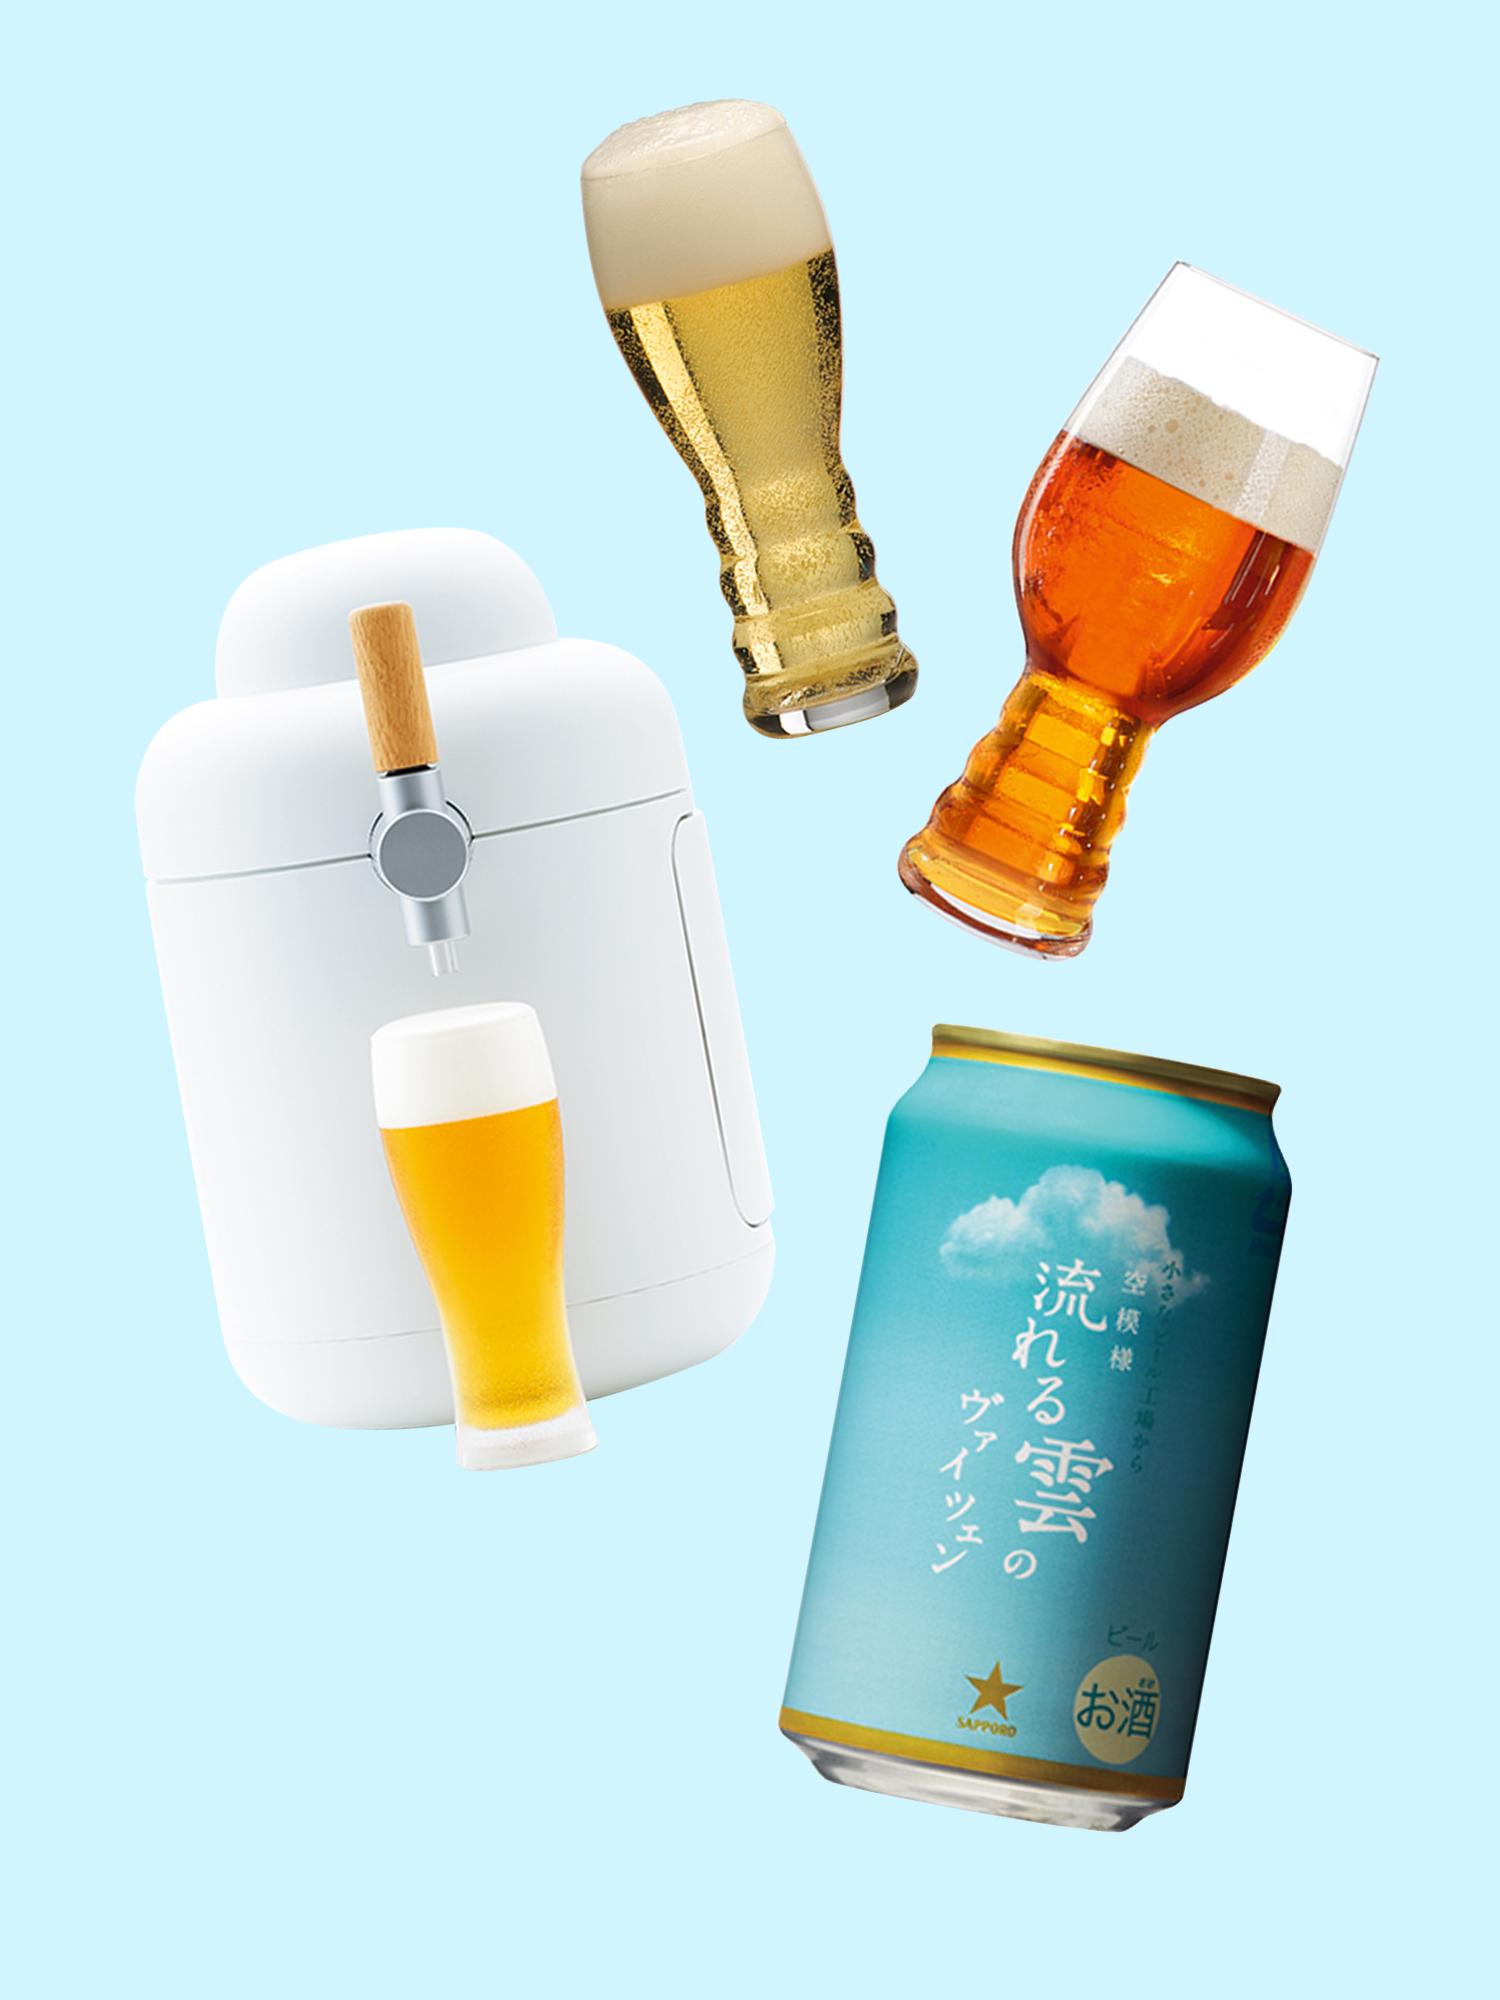 夏だ！ビールだ！！乾いた喉にグビグビグビっと。GINZAお勧めビール3選「ネット限定」「専用グラス」「自宅で生」